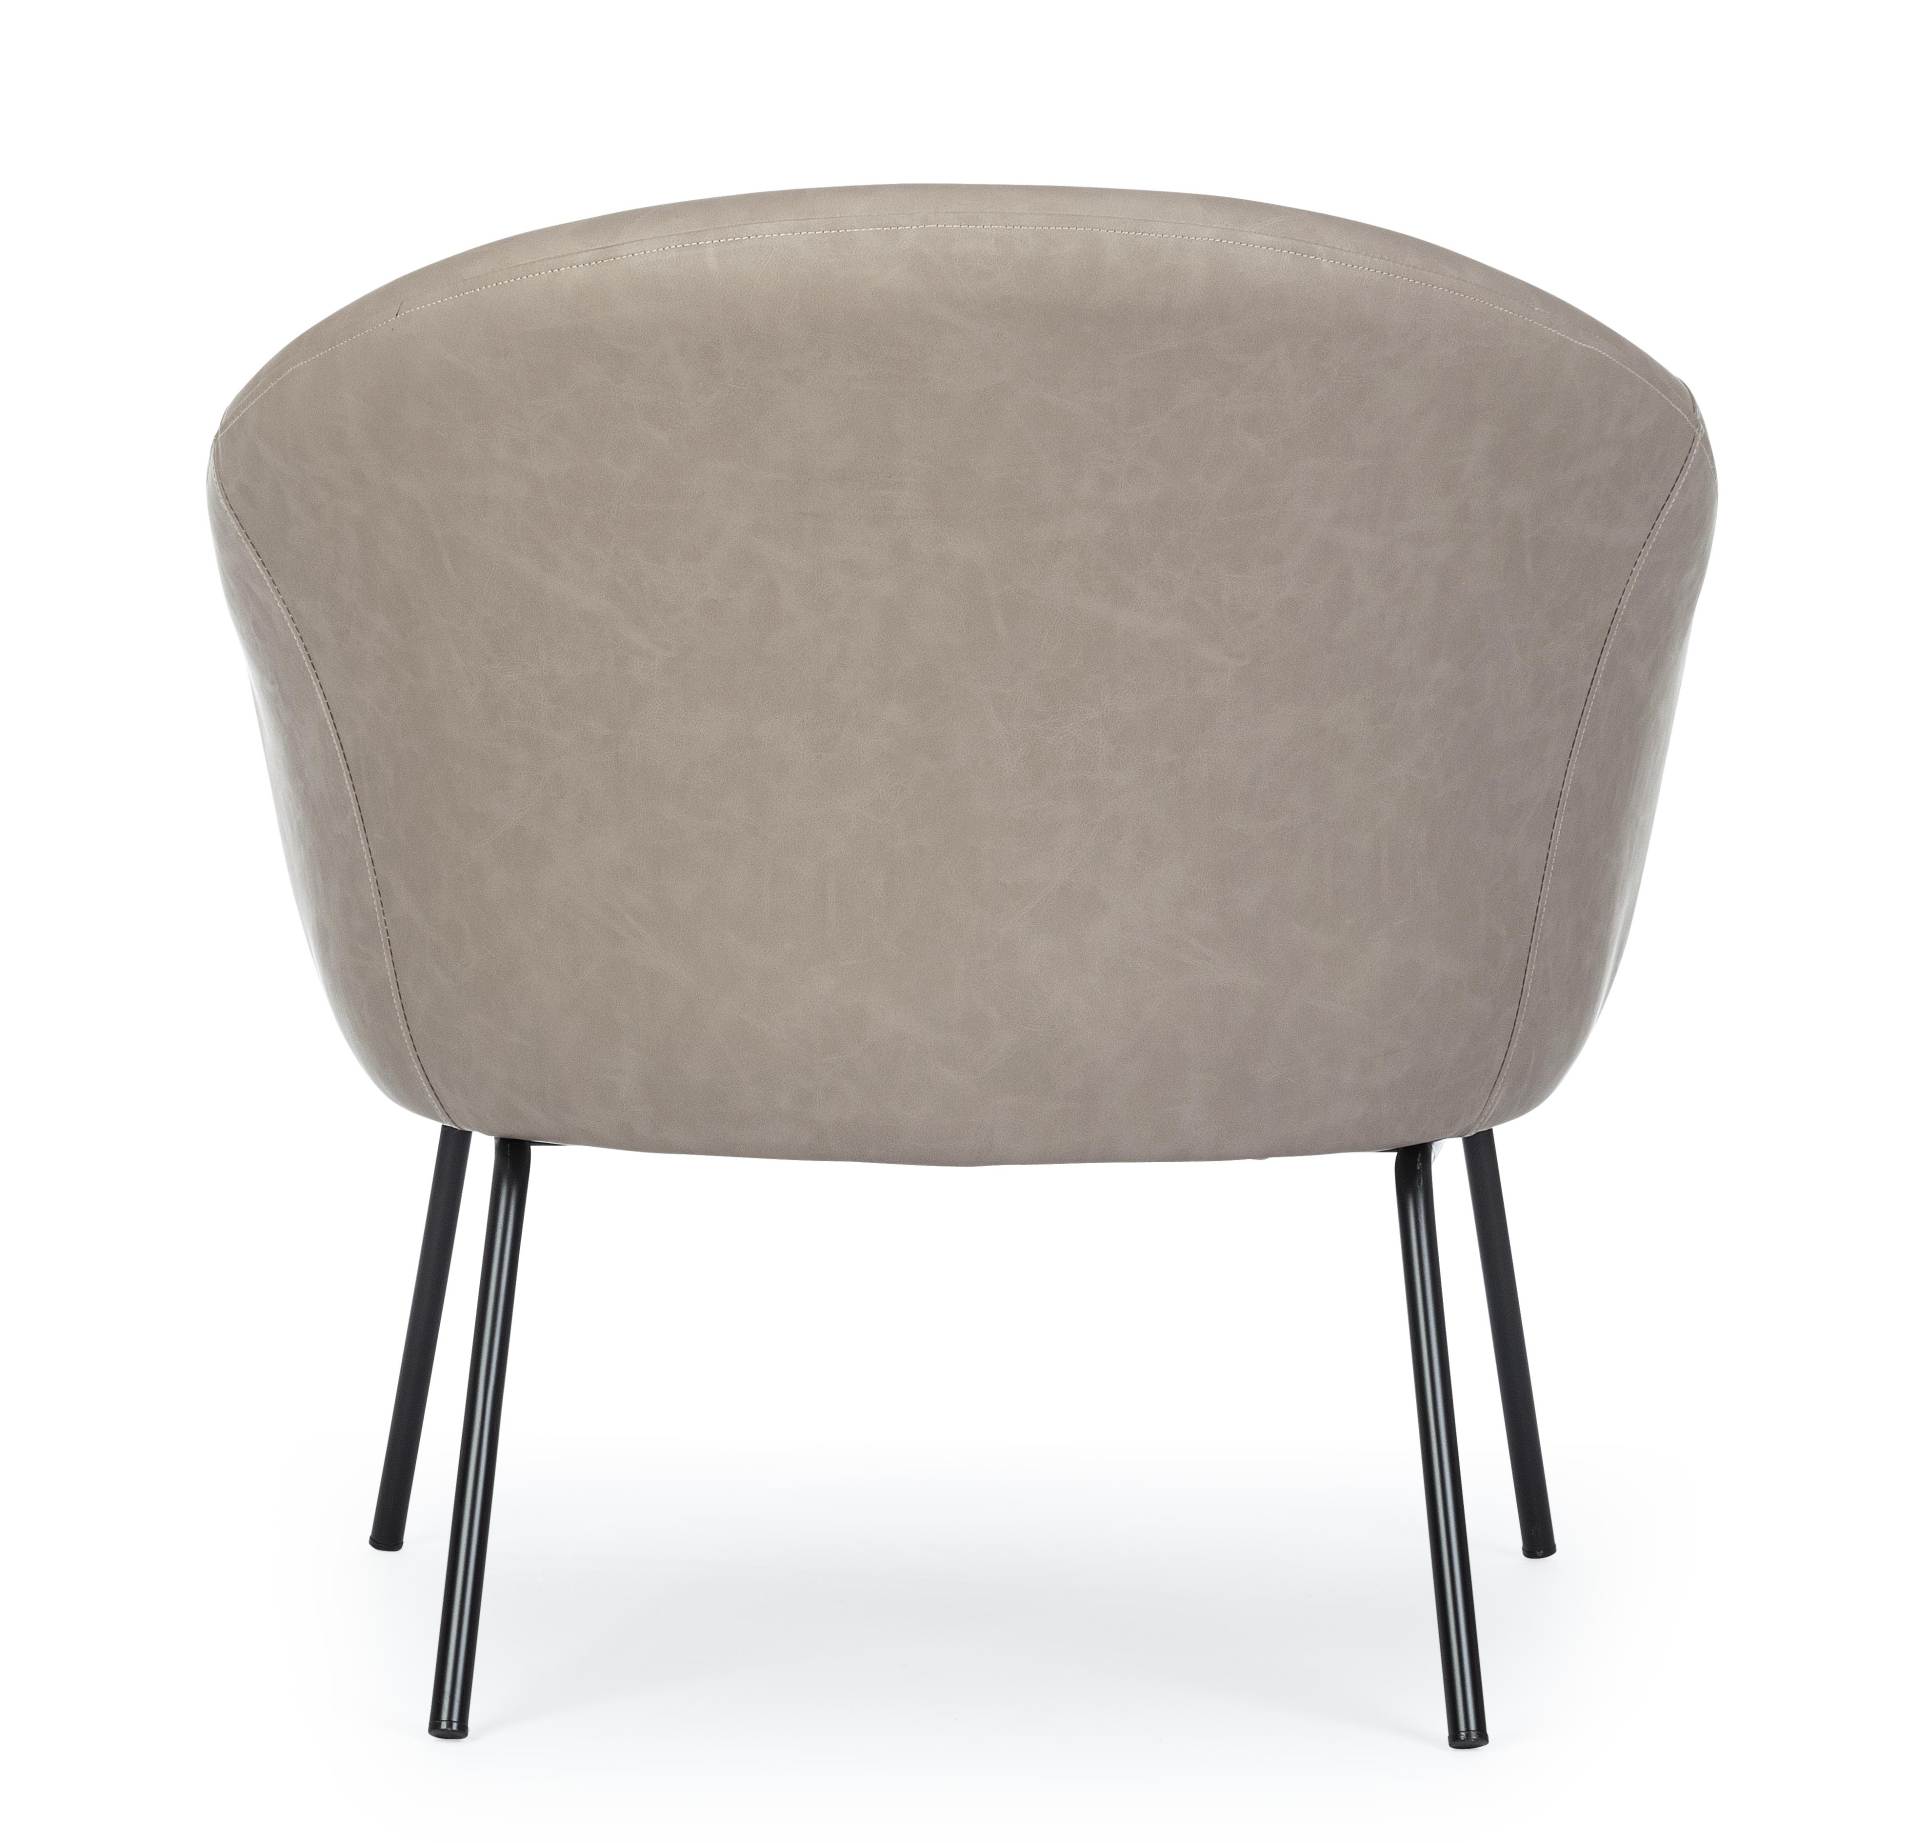 Der Sessel Aiko überzeugt mit seinem modernen Design. Gefertigt wurde er aus Kunstleder, welches einen Taupe Farbton besitzt. Das Gestell ist aus Metall und hat eine schwarze Farbe. Der Sessel besitzt eine Sitzhöhe von 45 cm. Die Breite beträgt 80 cm.